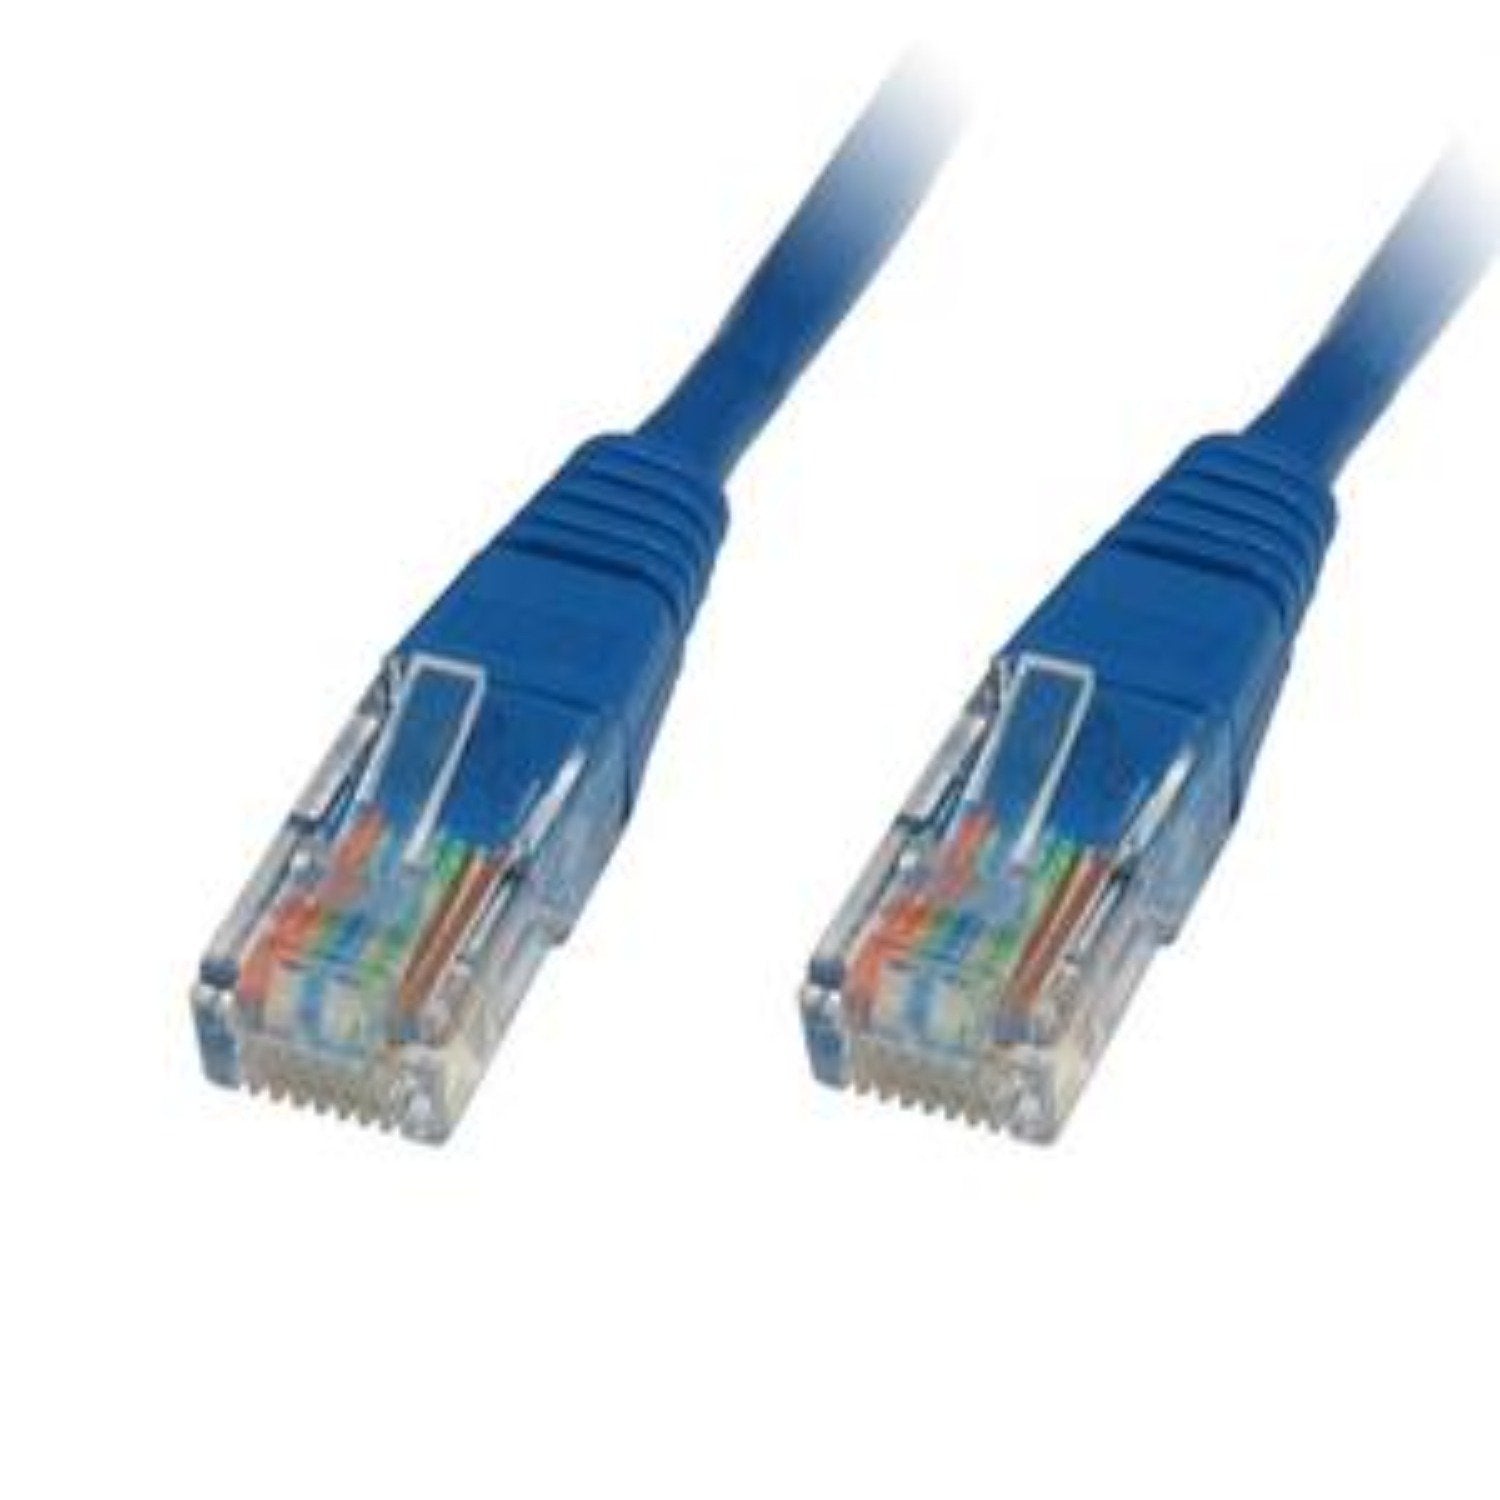 7.0m LMS Data Ethernet Cat5e RJ45 UTP Patch cable cord, LAN 10/100/1000Mbit/s Cable suitable